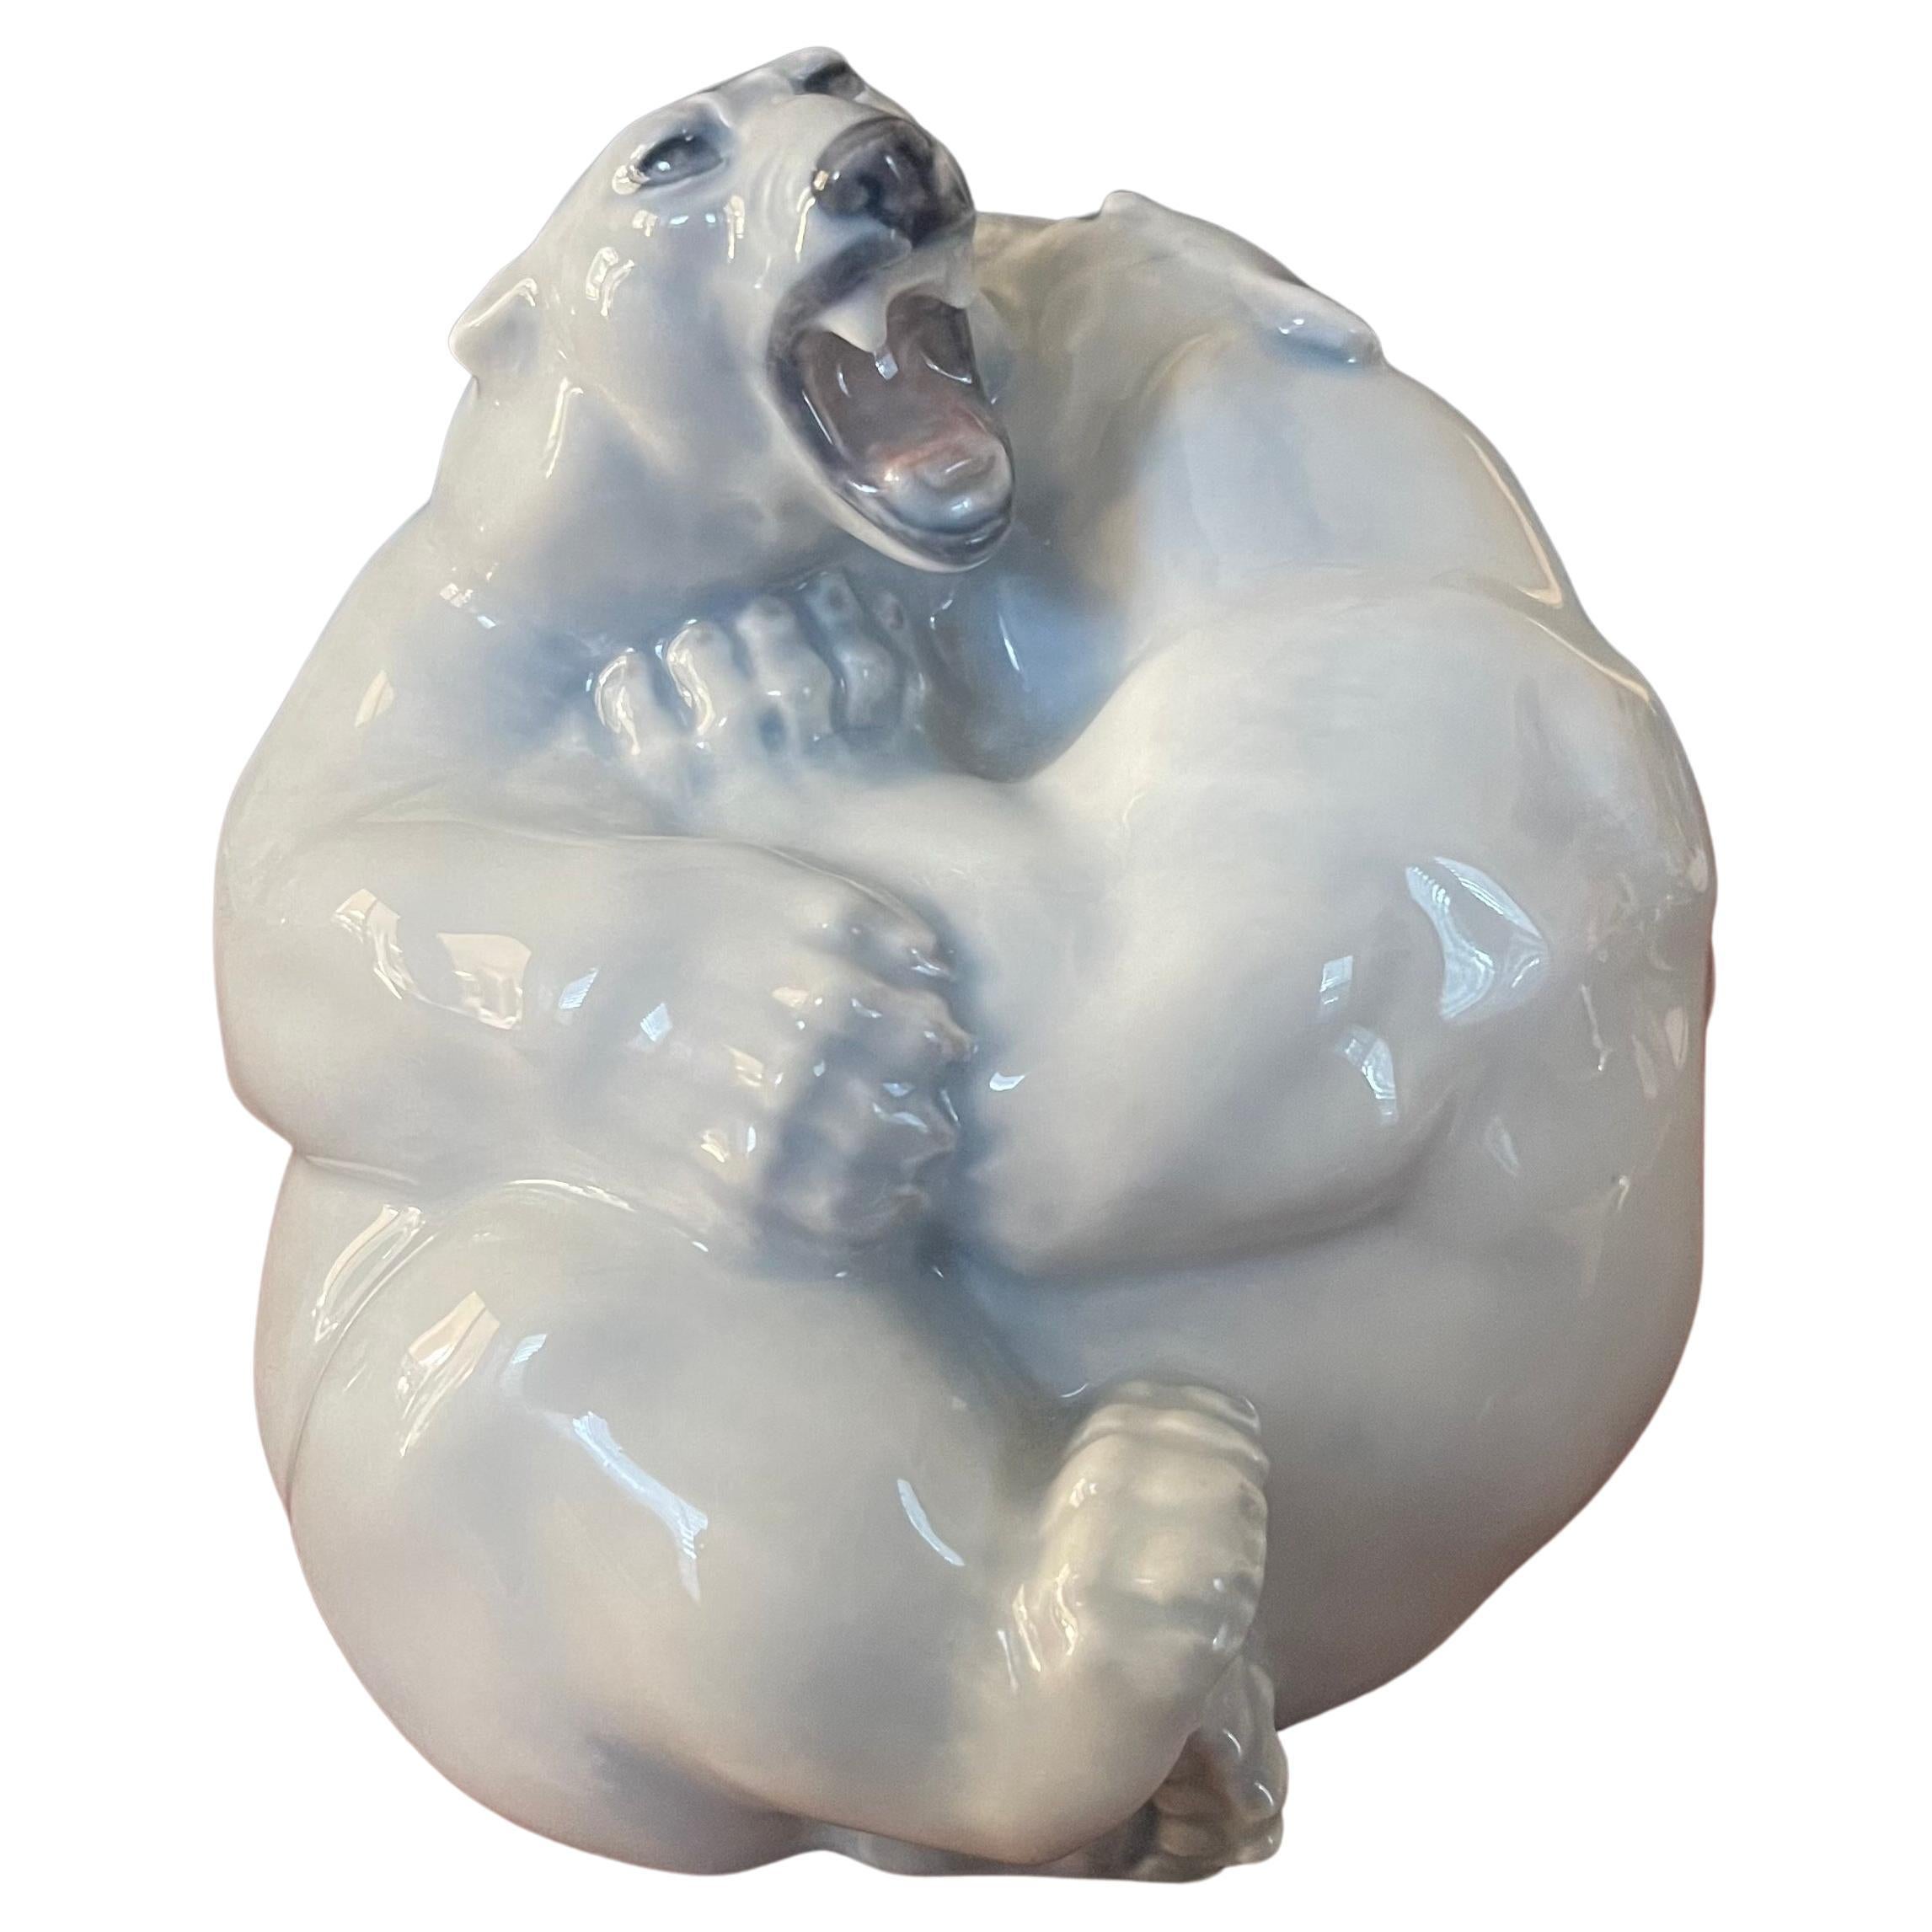 Eisbärenskulptur aus Porzellan von Royal Copenhagen, um 1936 (per Punzierungslinie über 